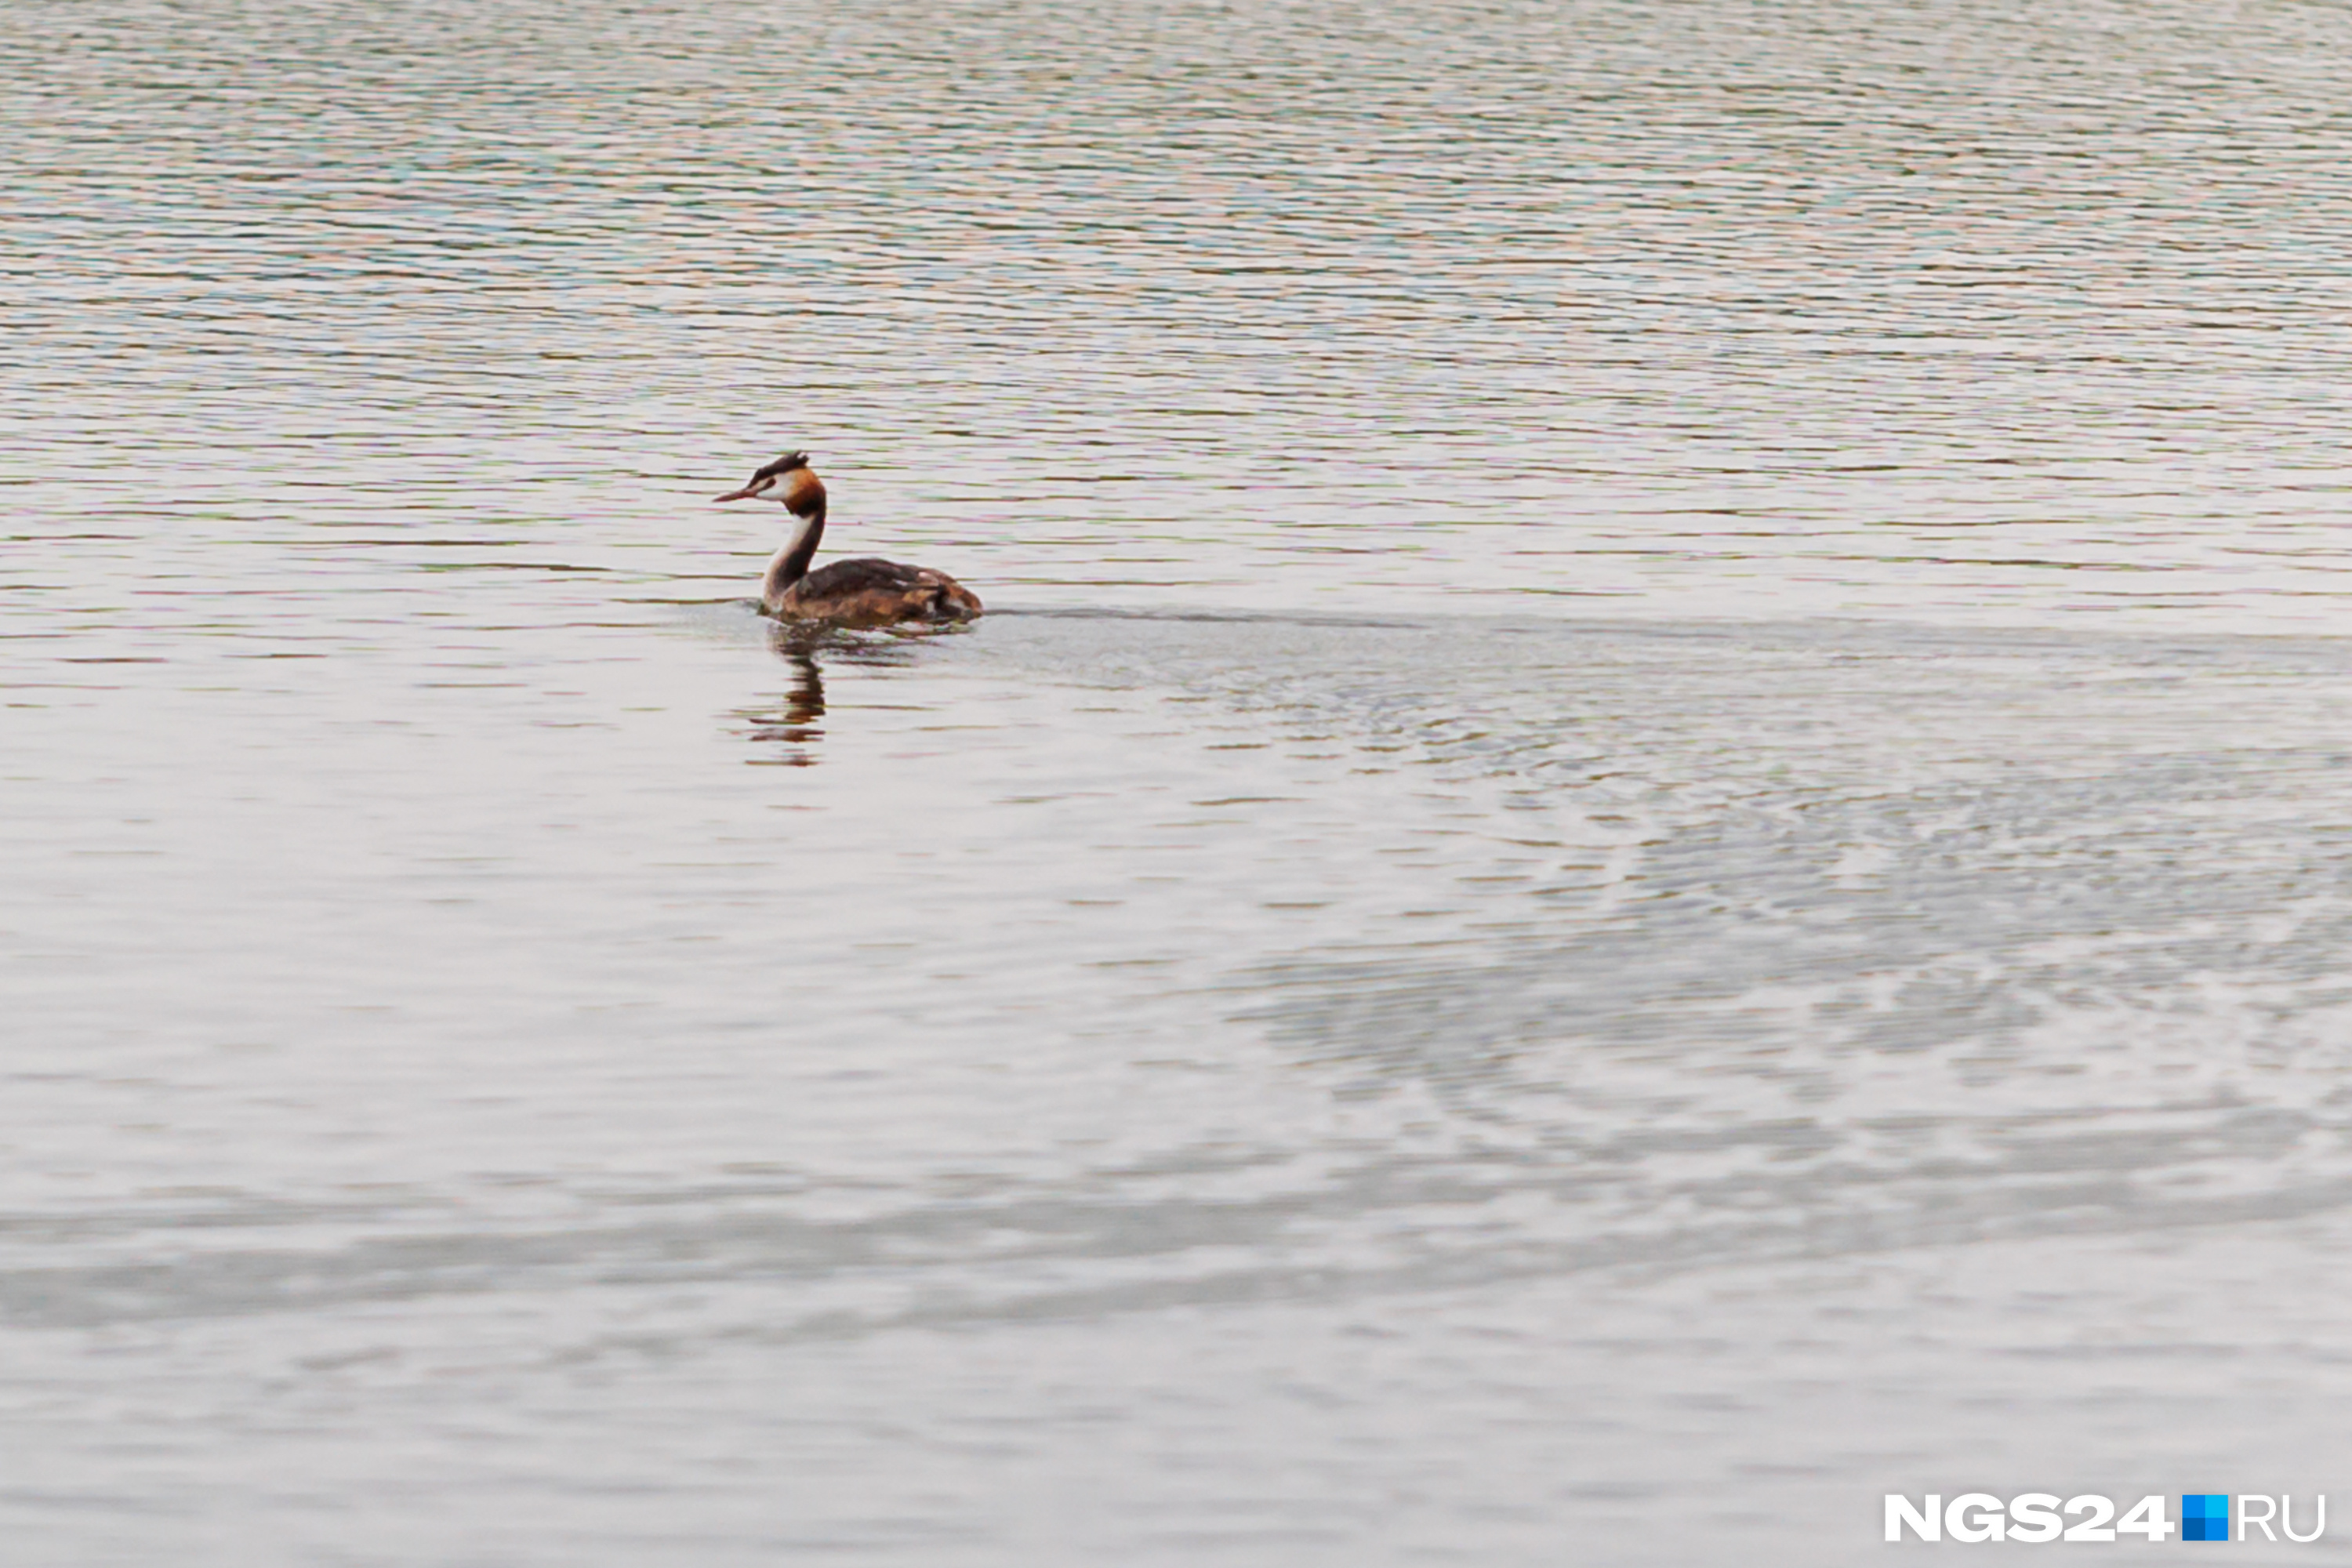 Черные перья на голове и рыжий воротник: красноярцы заметили на озере Мясокомбината одинокую необычную птицу — кто это